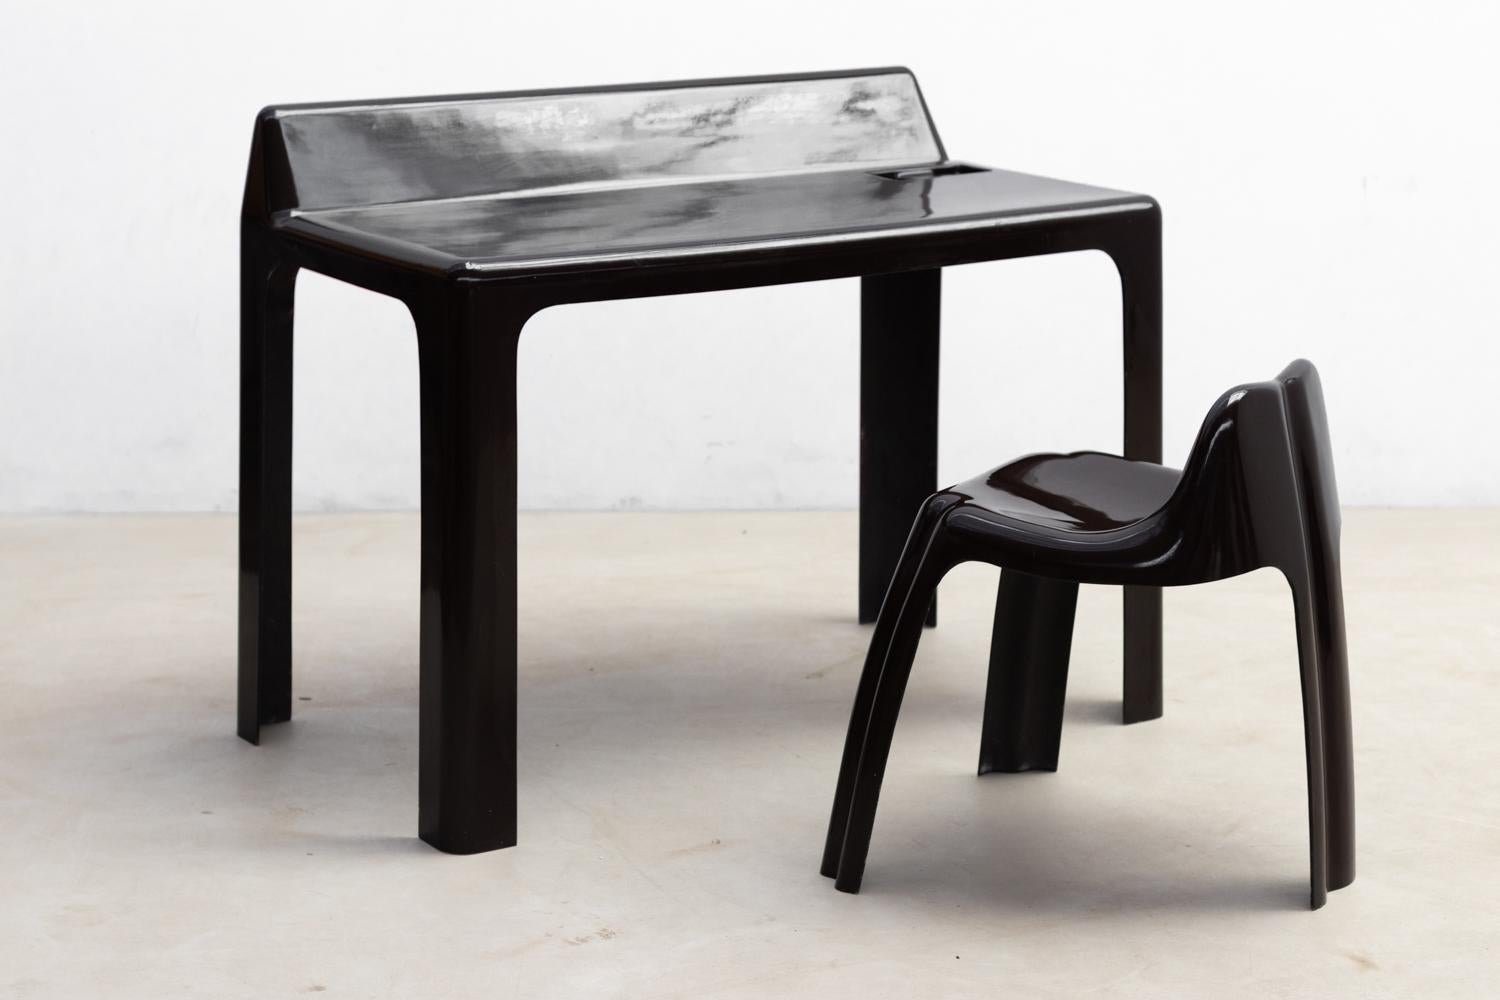 Ensemble bureau et chaise : NO AGE Design/One, 1970

Ce bureau en fibre de verre laqué brun, associé à une chaise assortie, incarne le style emblématique de l'ère spatiale. Conçue par Patrick Gingembre pour Paulus Edition, elle reflète l'esprit